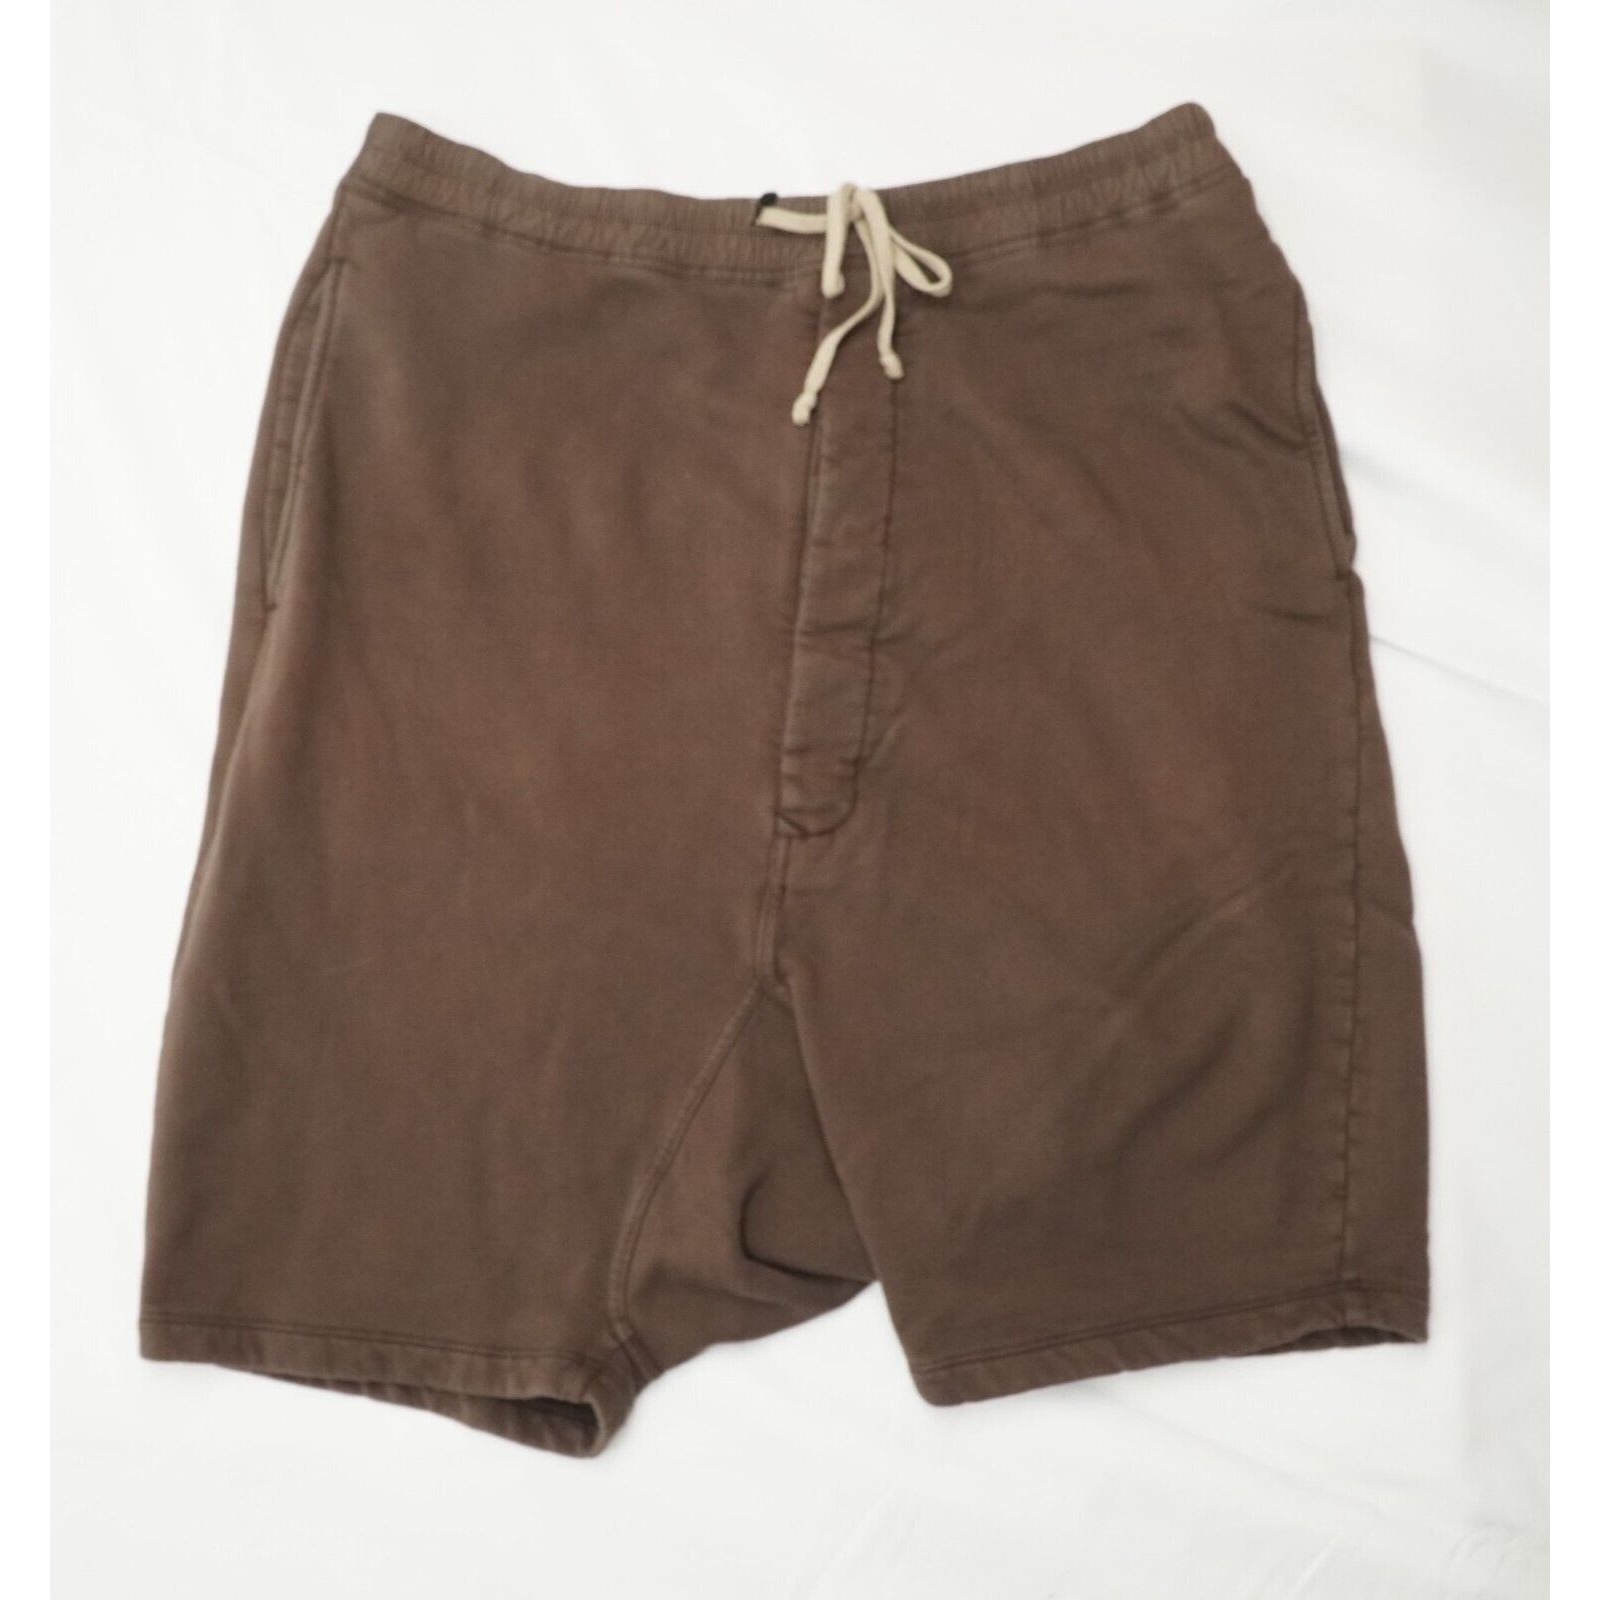 Rick Shorts Drop Crotch Cotton Macassar Brown Large - 3